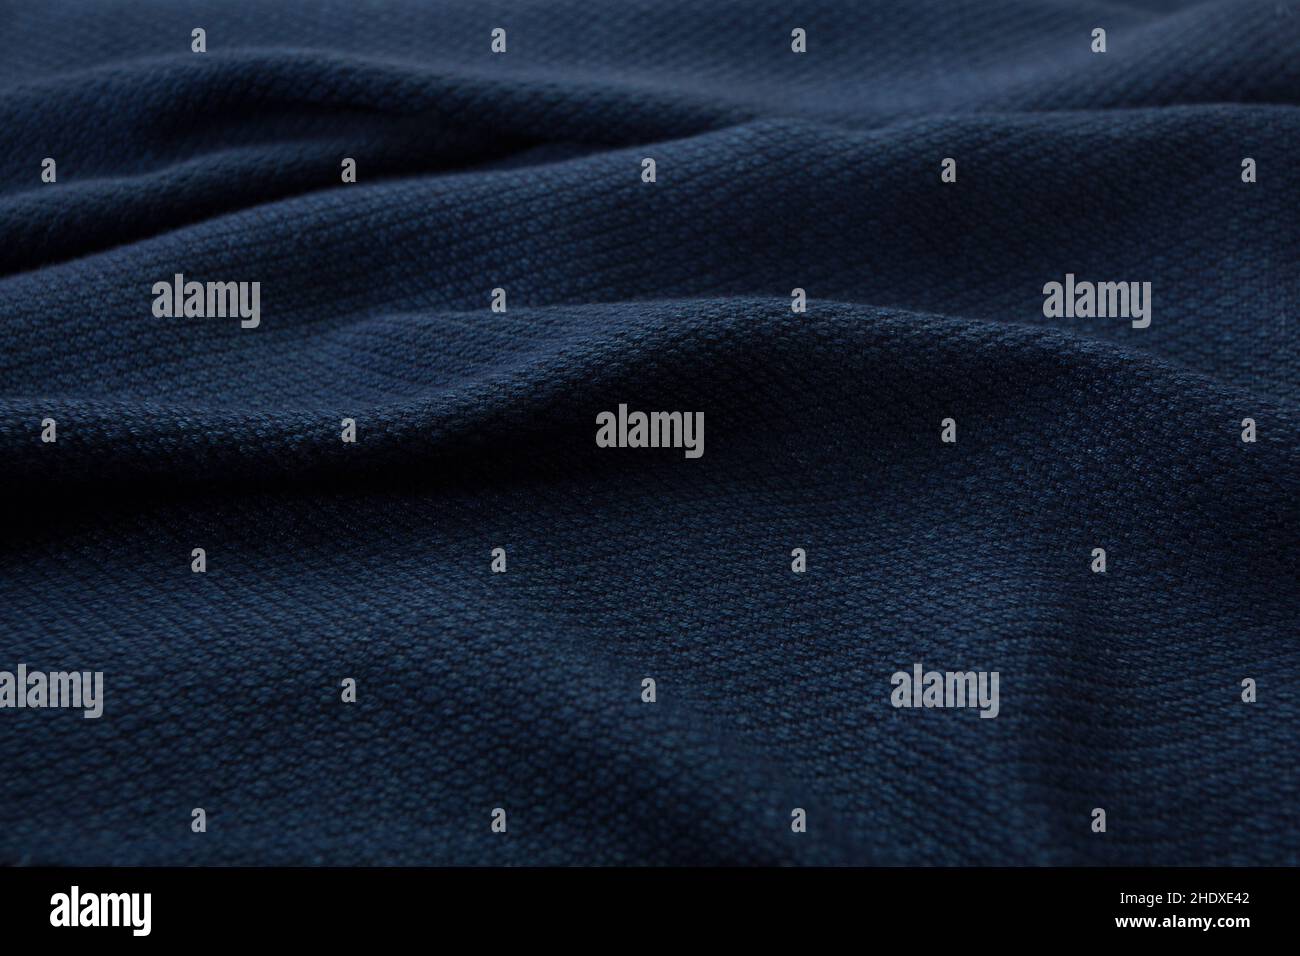 Primer plano de textura de mantón tejido a mano, algodón tailandés teñido indigo Foto de stock